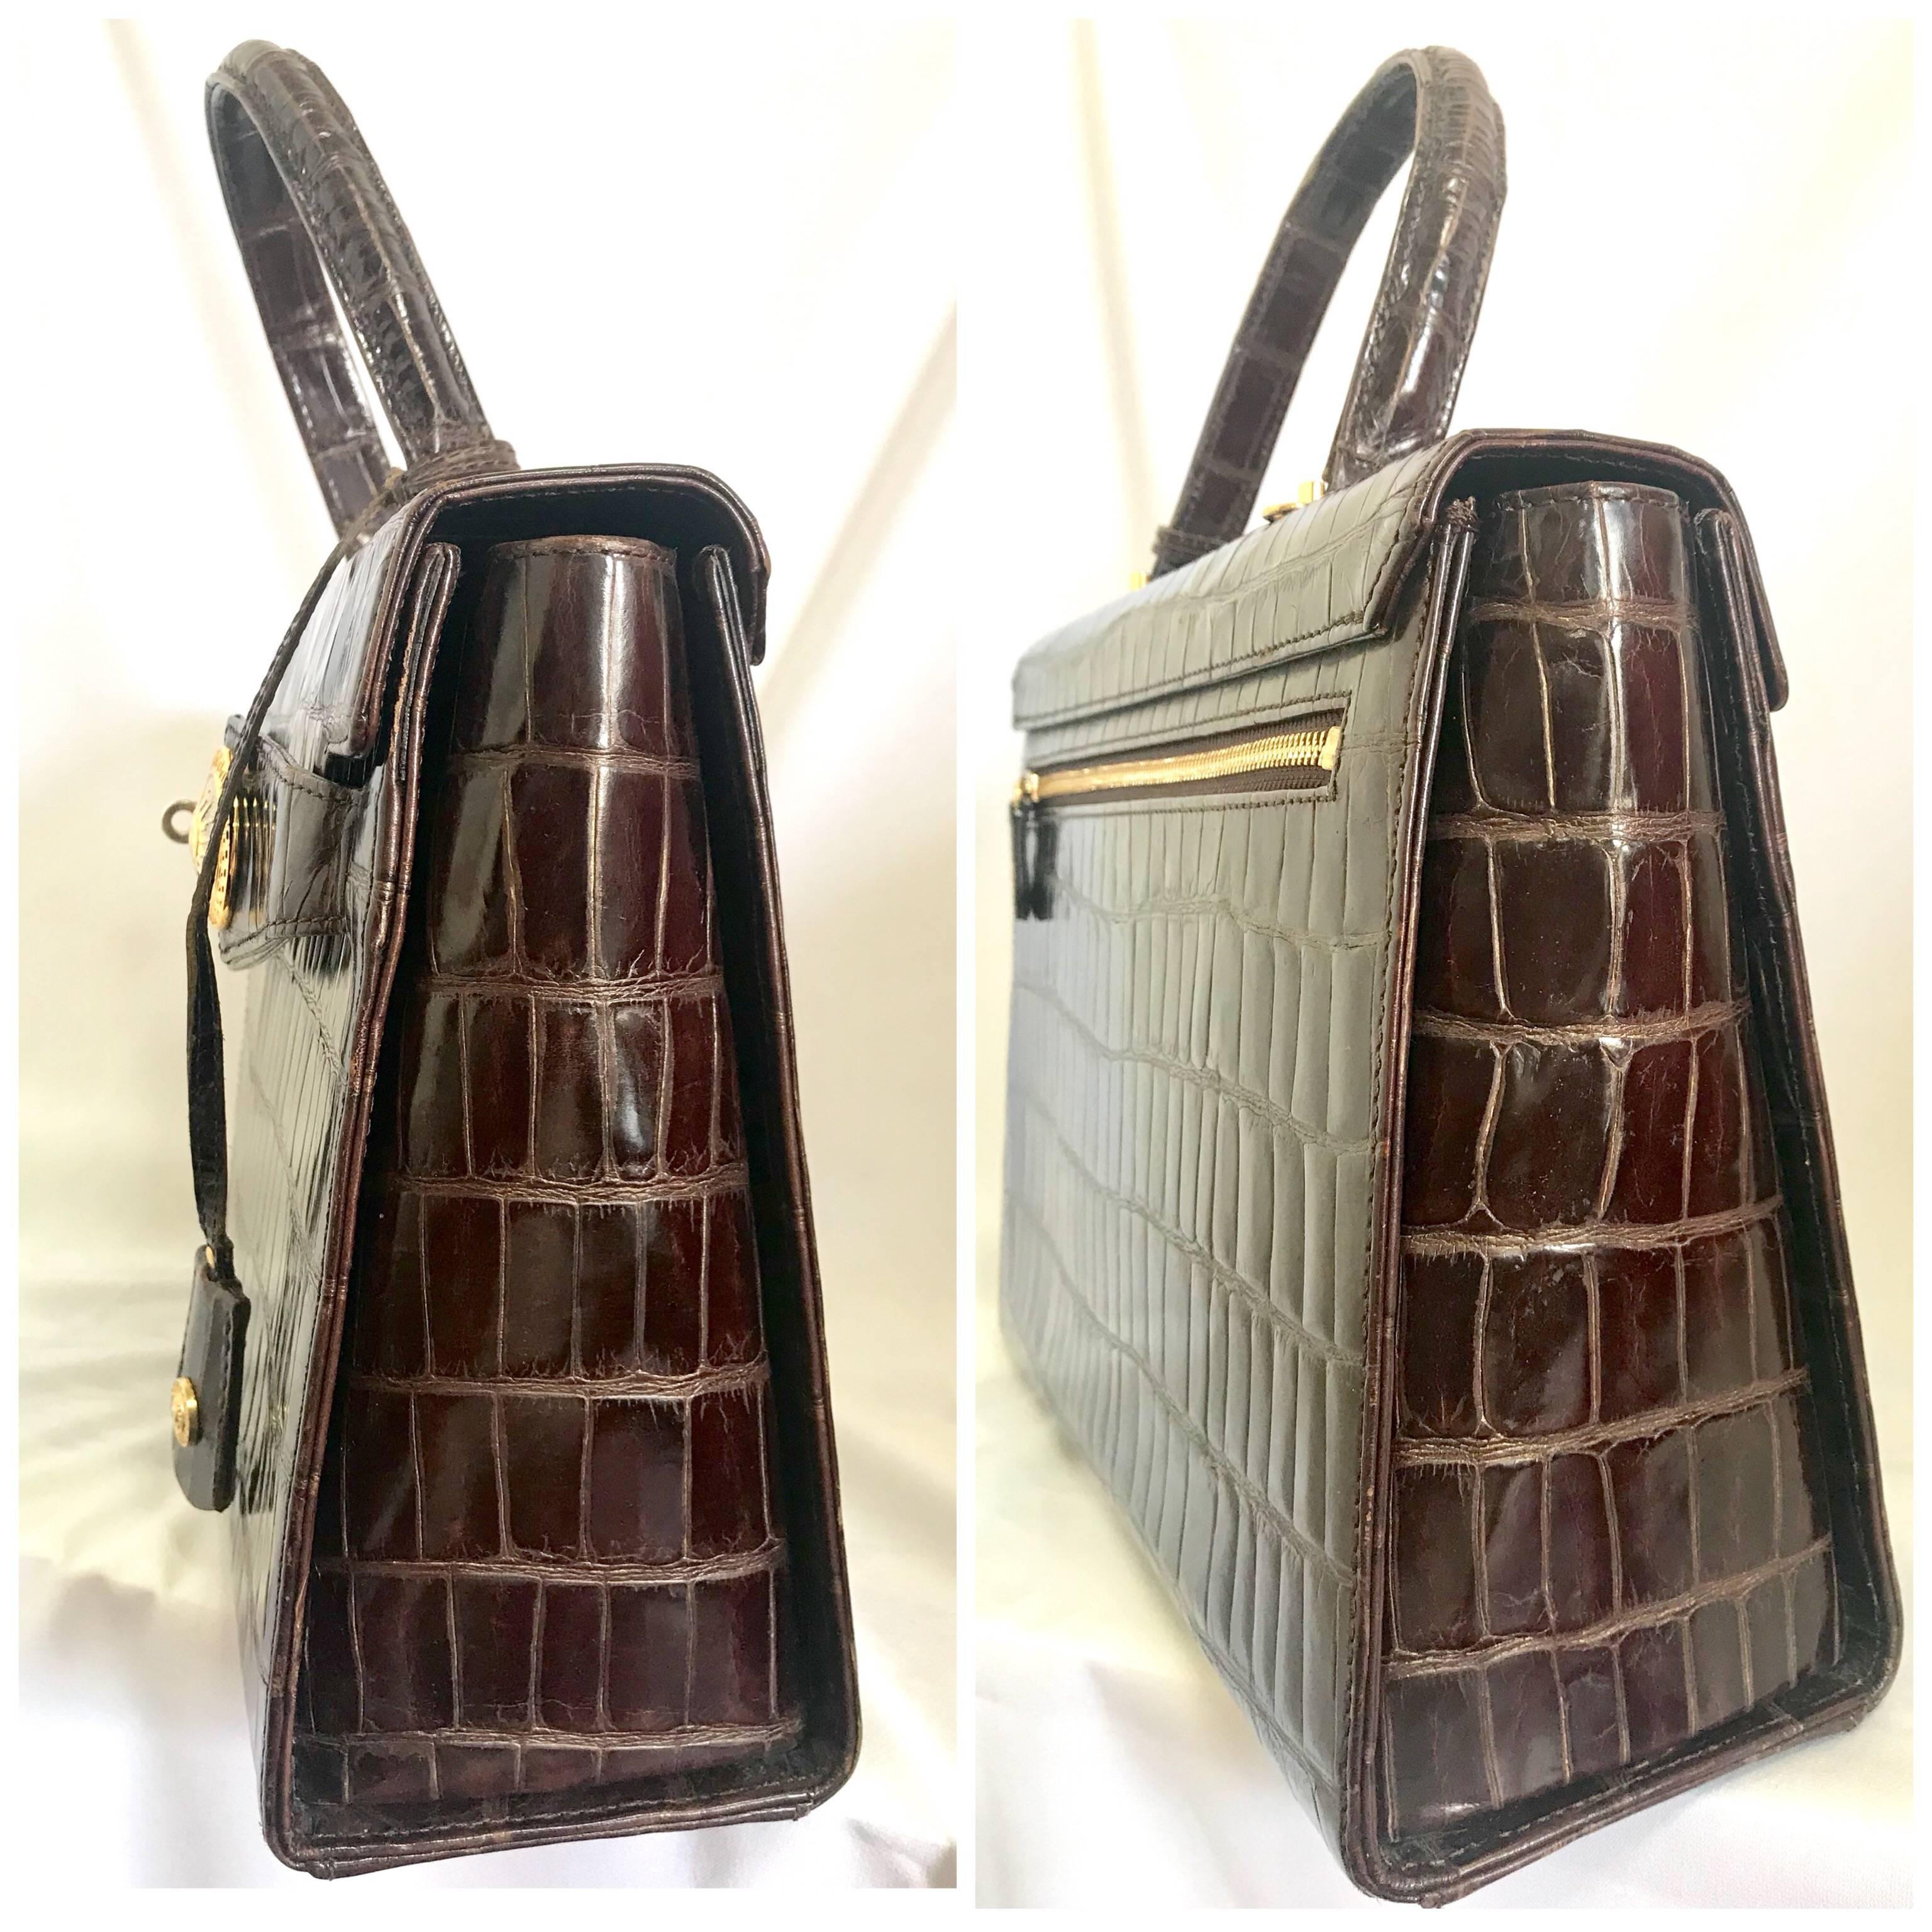 Vintage Gianni Versace dark brown croc embossed leather Kelly style bag. 14